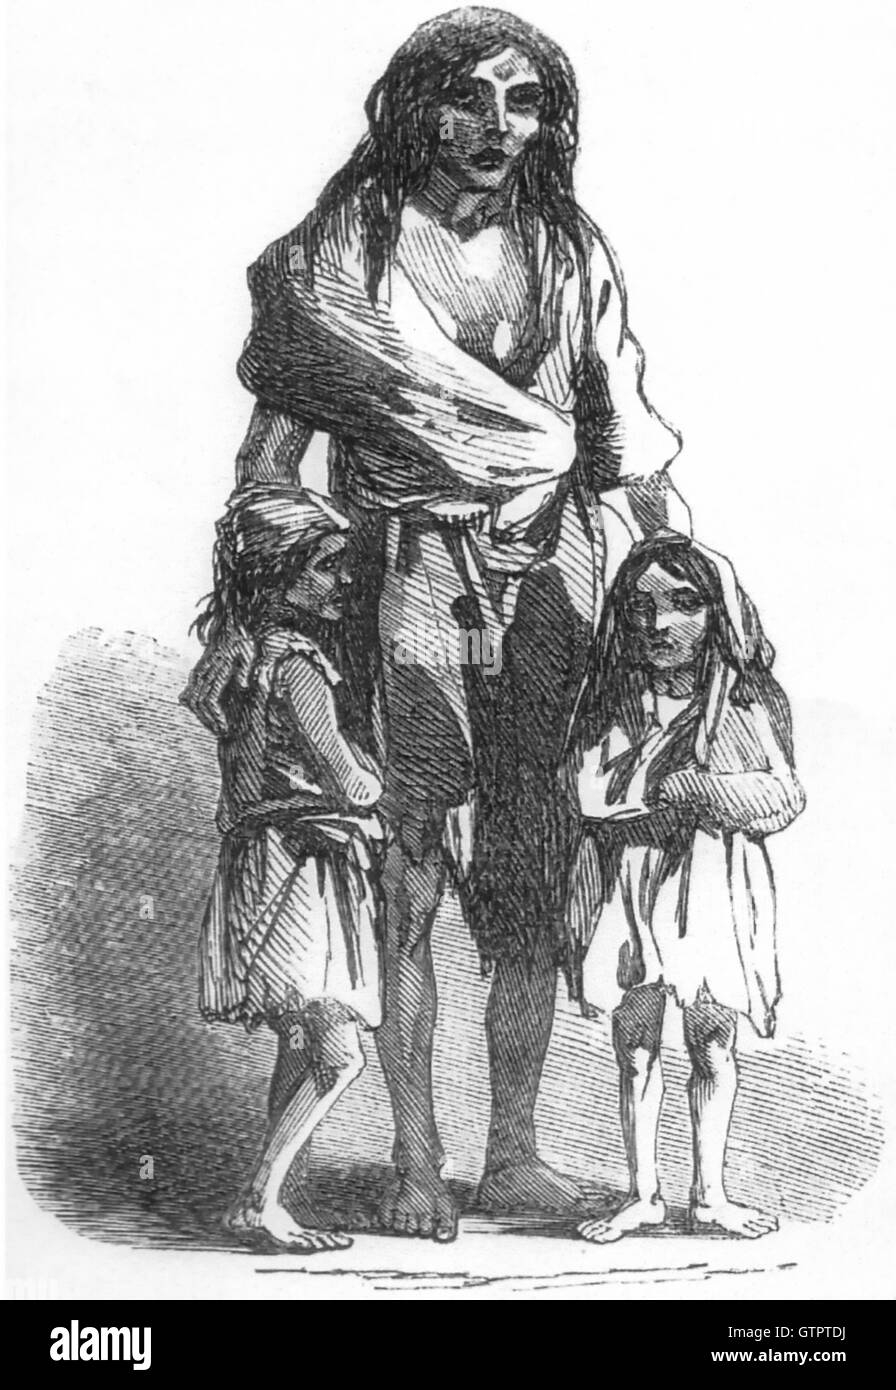 La gravure DE LA GRANDE FAMINE irlandaise de Bridget O'Donnell de l'Illustrated London News du 22 décembre 1849 qui a accompagné son histoire déchirante de l'expulsion et des décès. Banque D'Images